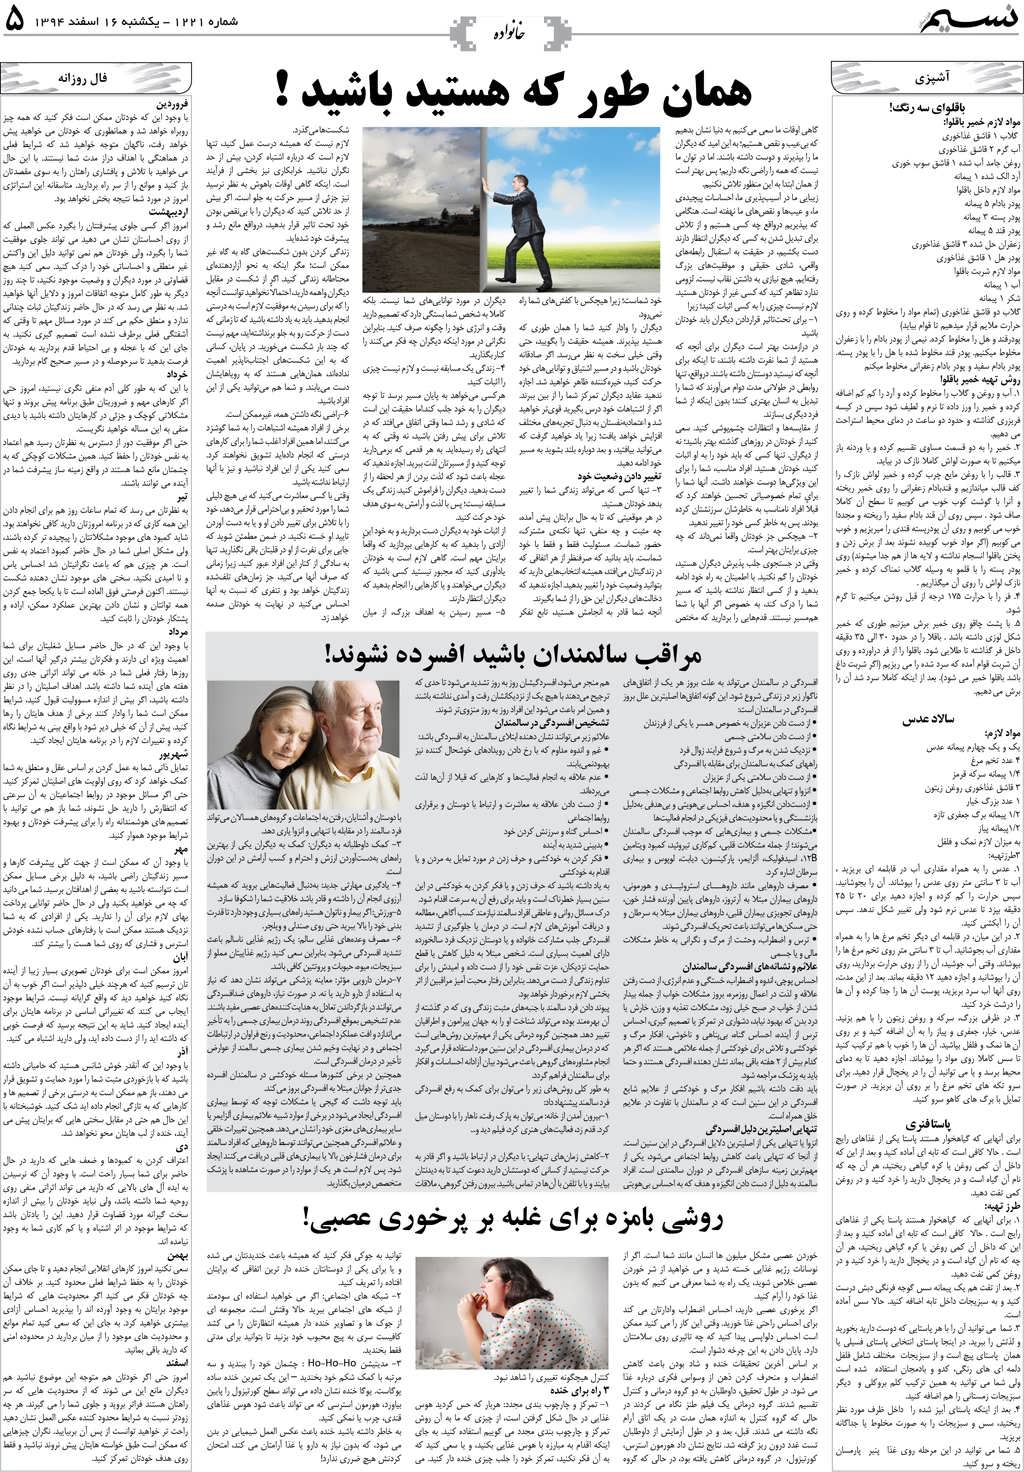 صفحه خانواده روزنامه نسیم شماره 1221